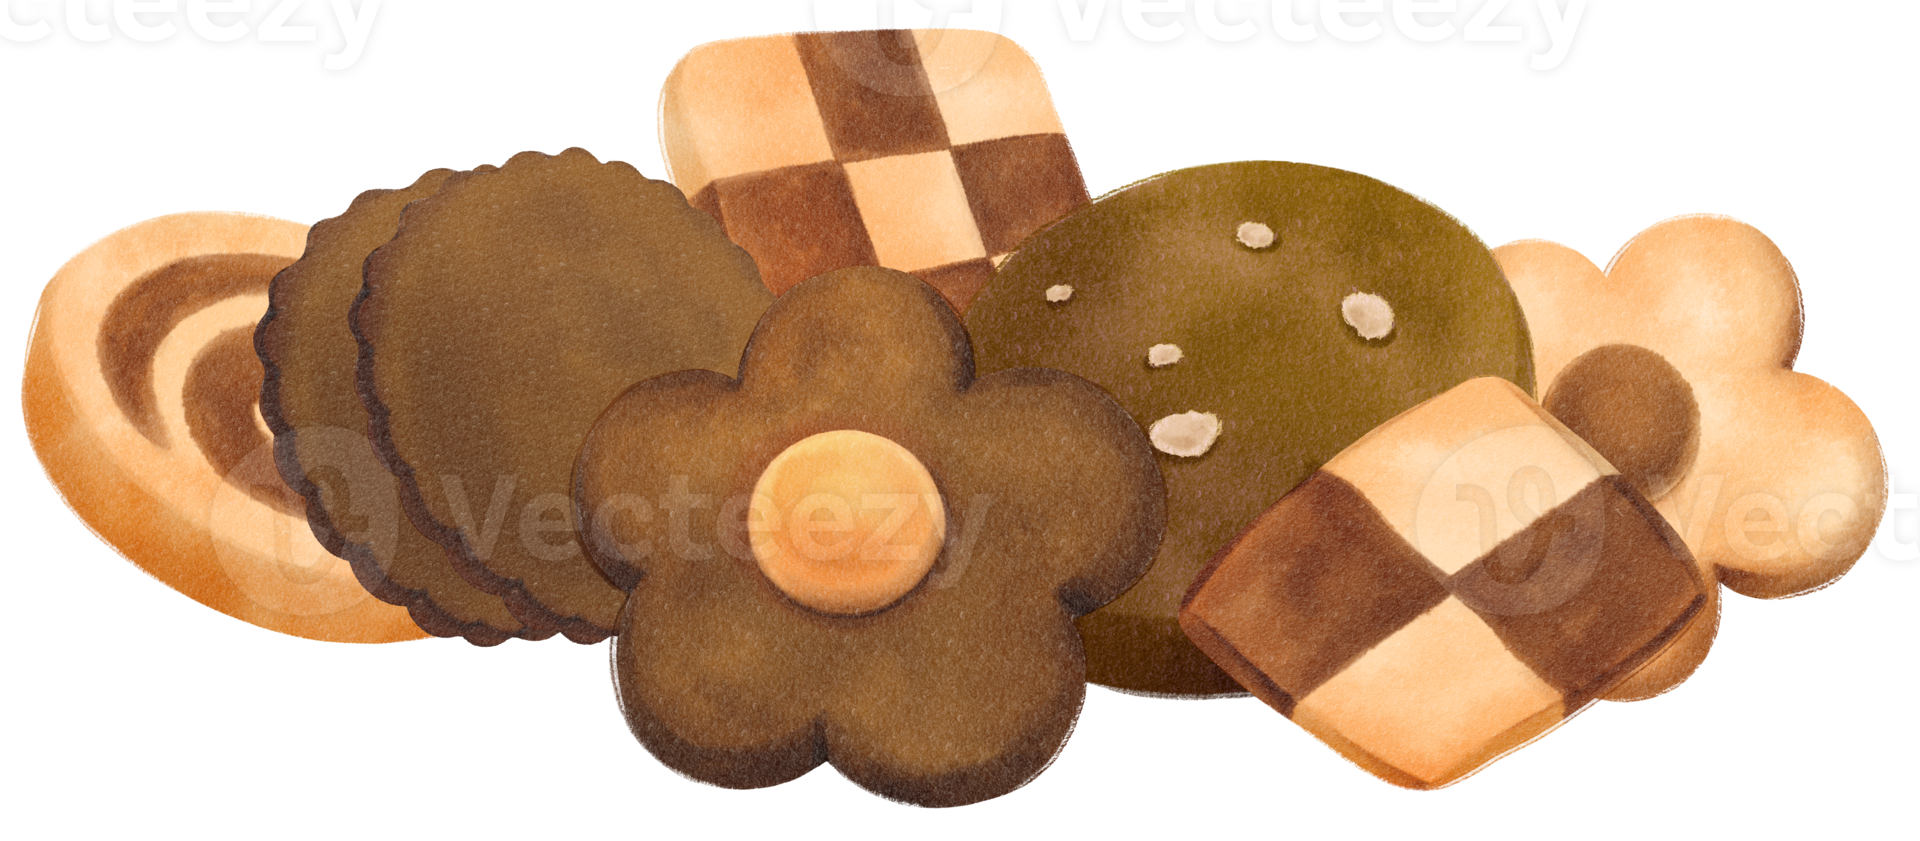 ilustração de biscoitos em aquarela png